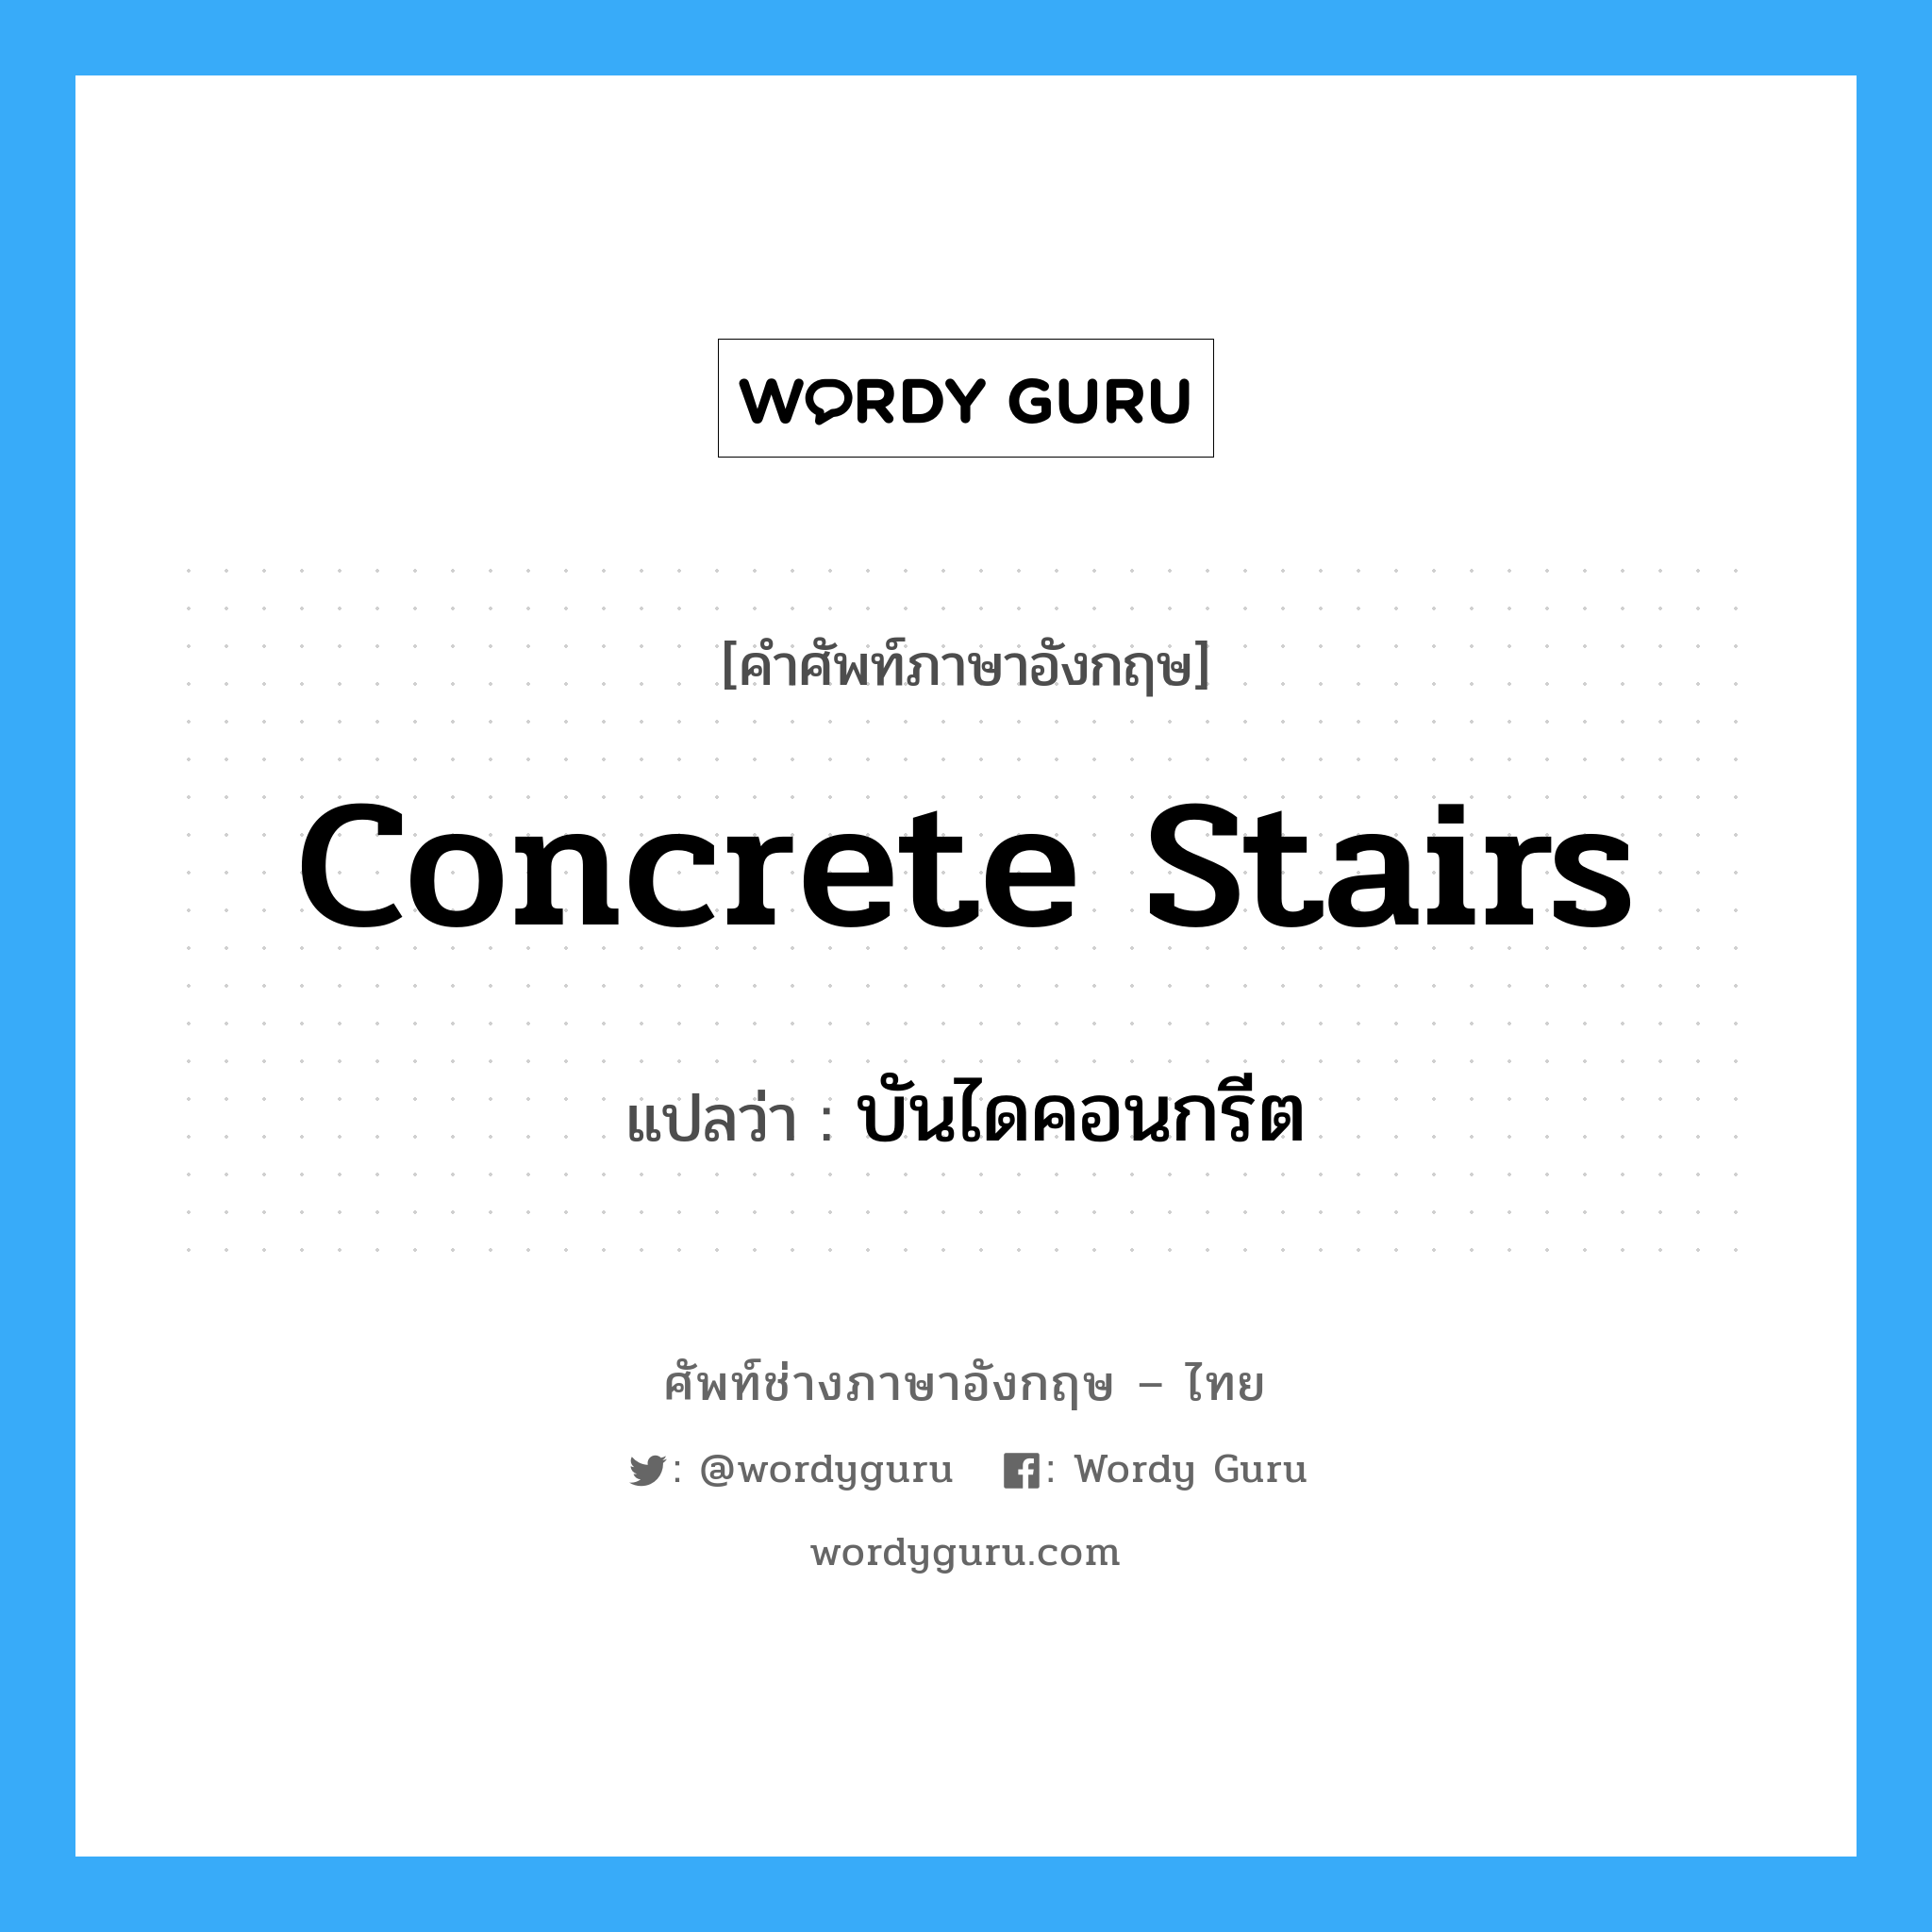 บันไดคอนกรีต ภาษาอังกฤษ?, คำศัพท์ช่างภาษาอังกฤษ - ไทย บันไดคอนกรีต คำศัพท์ภาษาอังกฤษ บันไดคอนกรีต แปลว่า concrete stairs